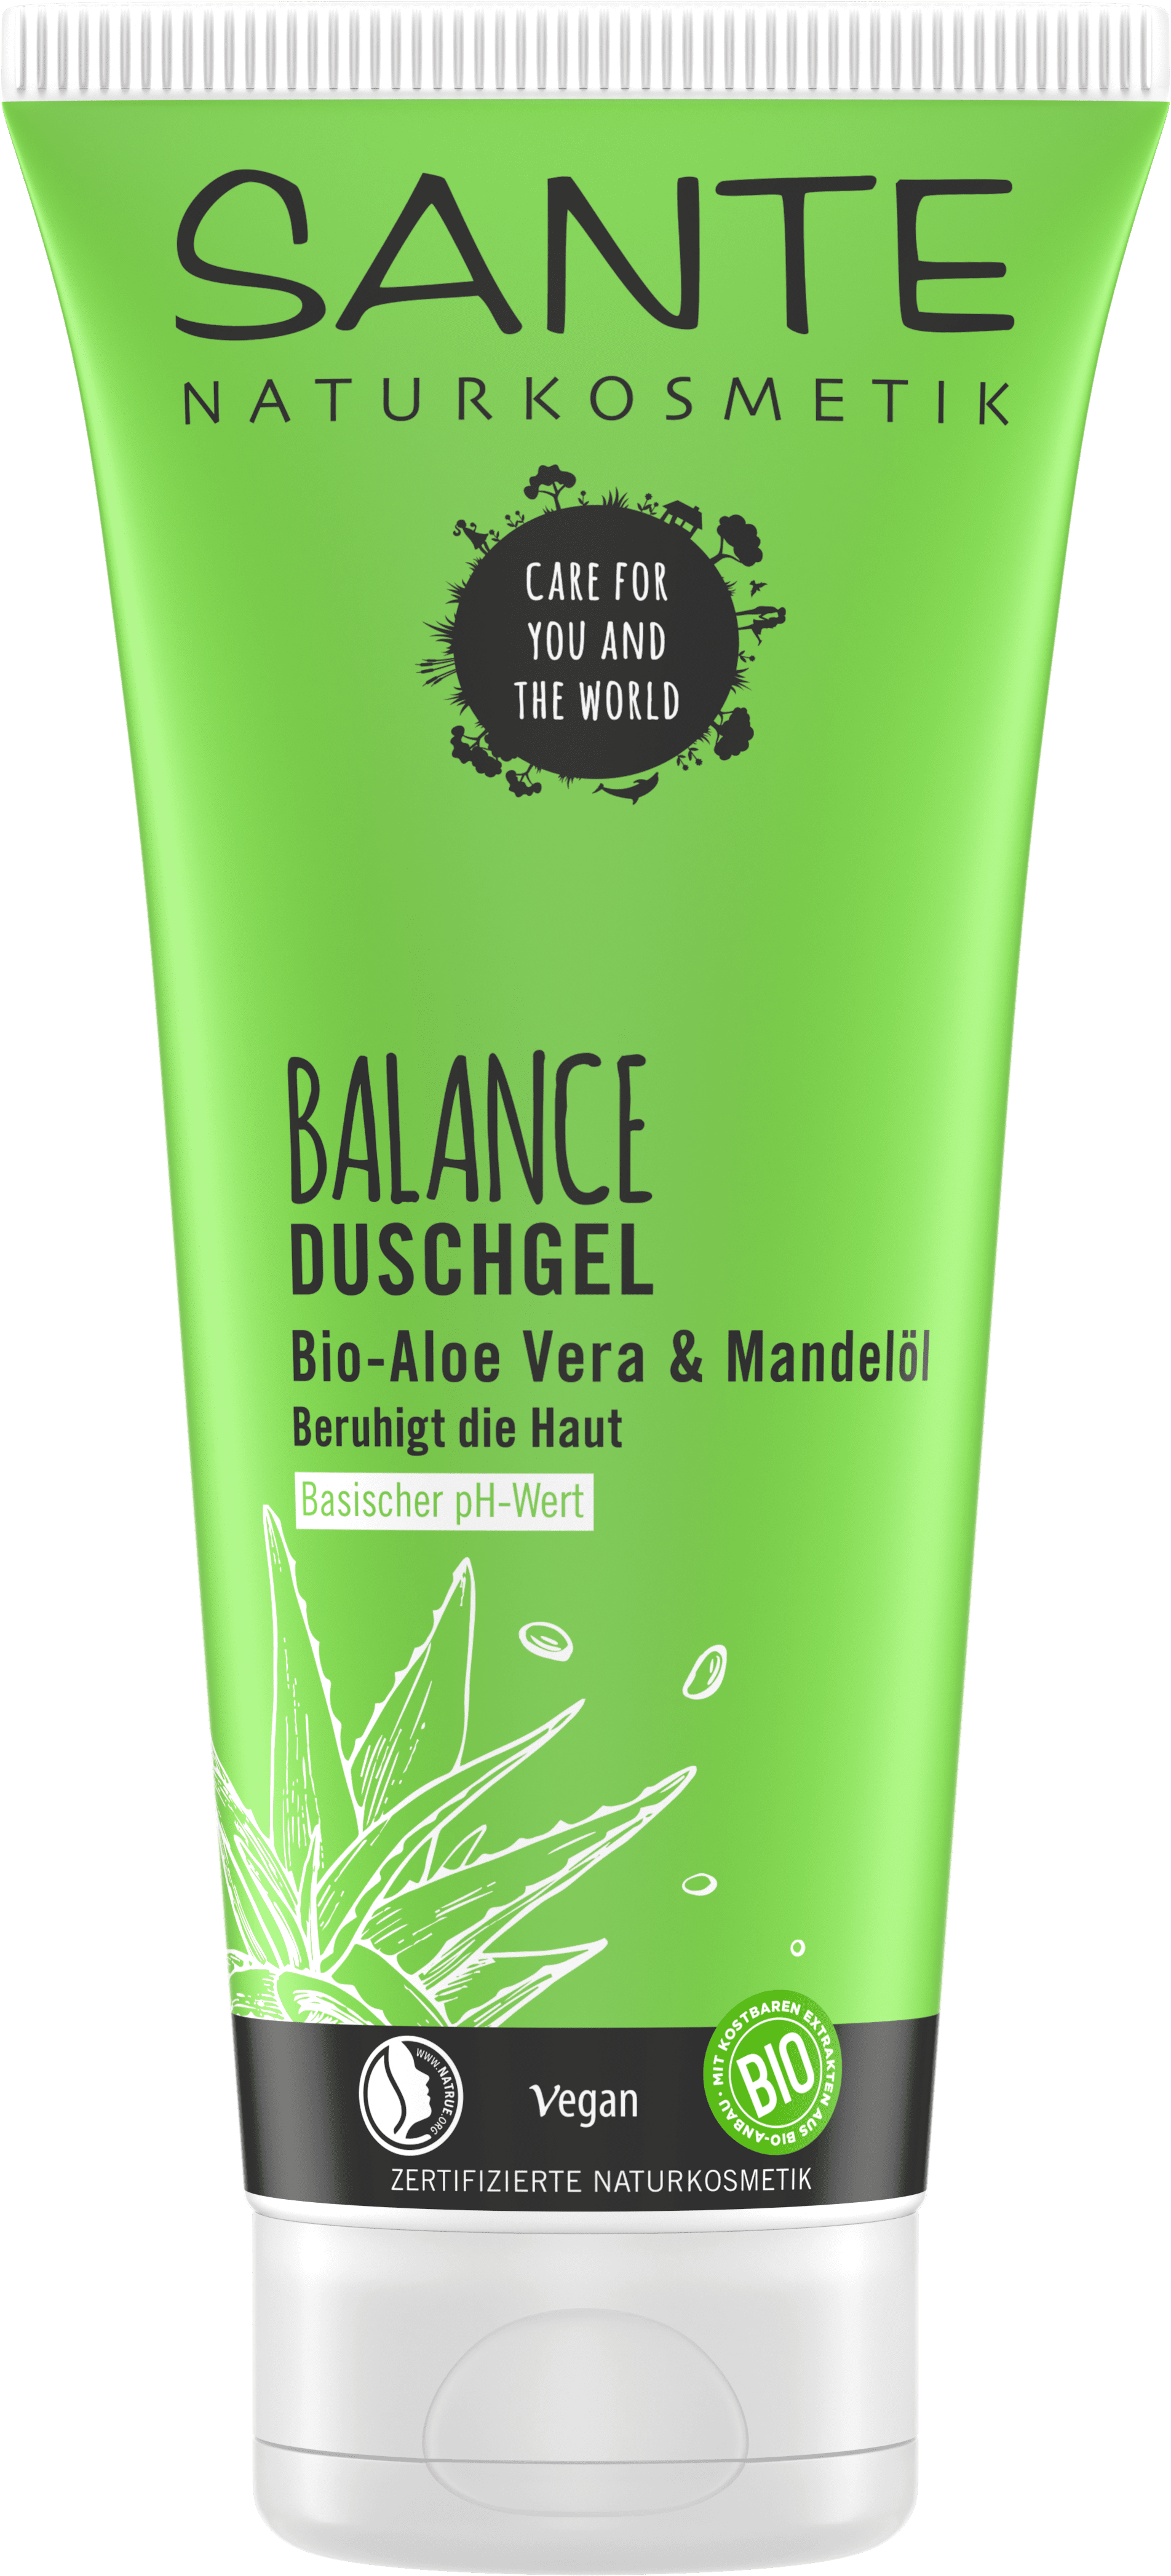 BALANCE Duschgel | SANTE Naturkosmetik